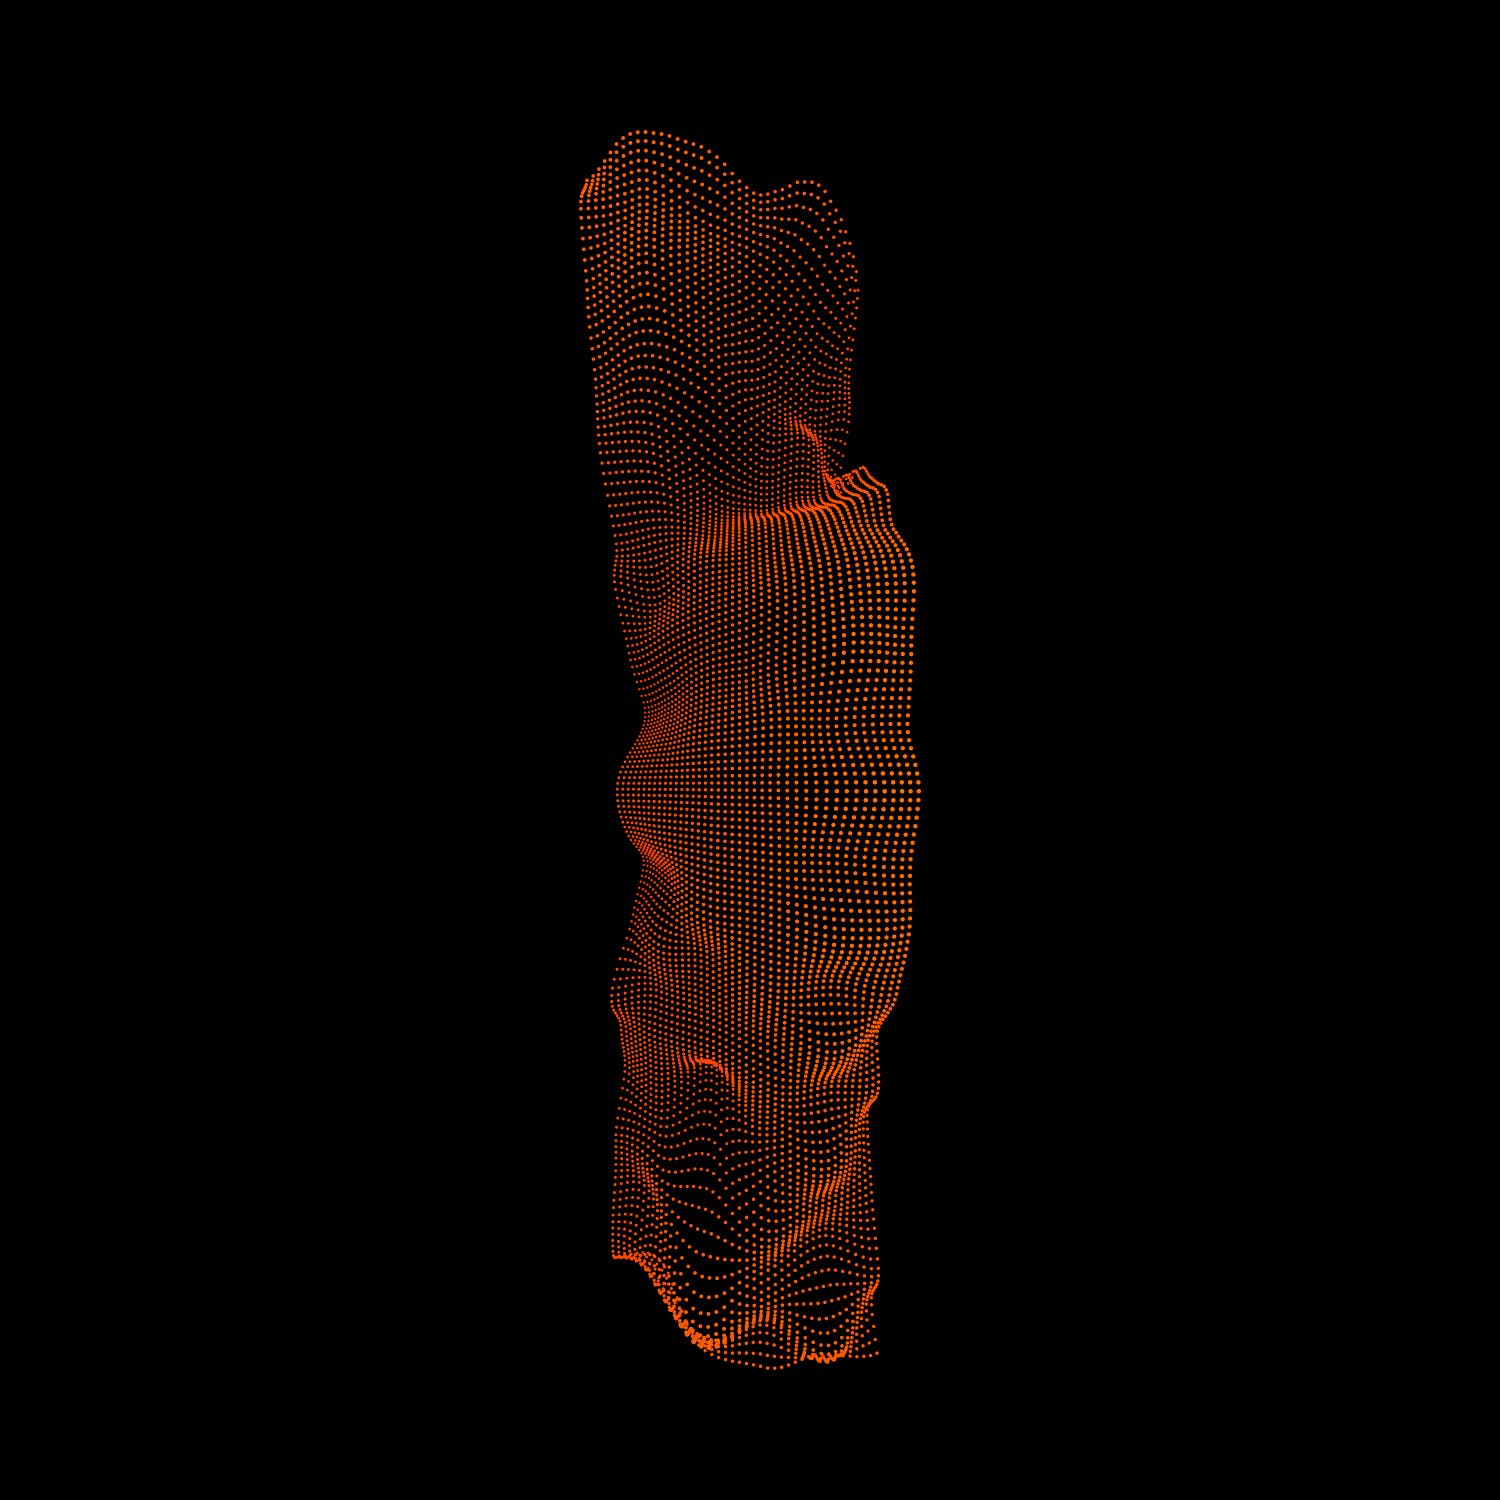 3D打印噪点收集背景插图素材 Geometric 3D Noise Collection设计素材模板